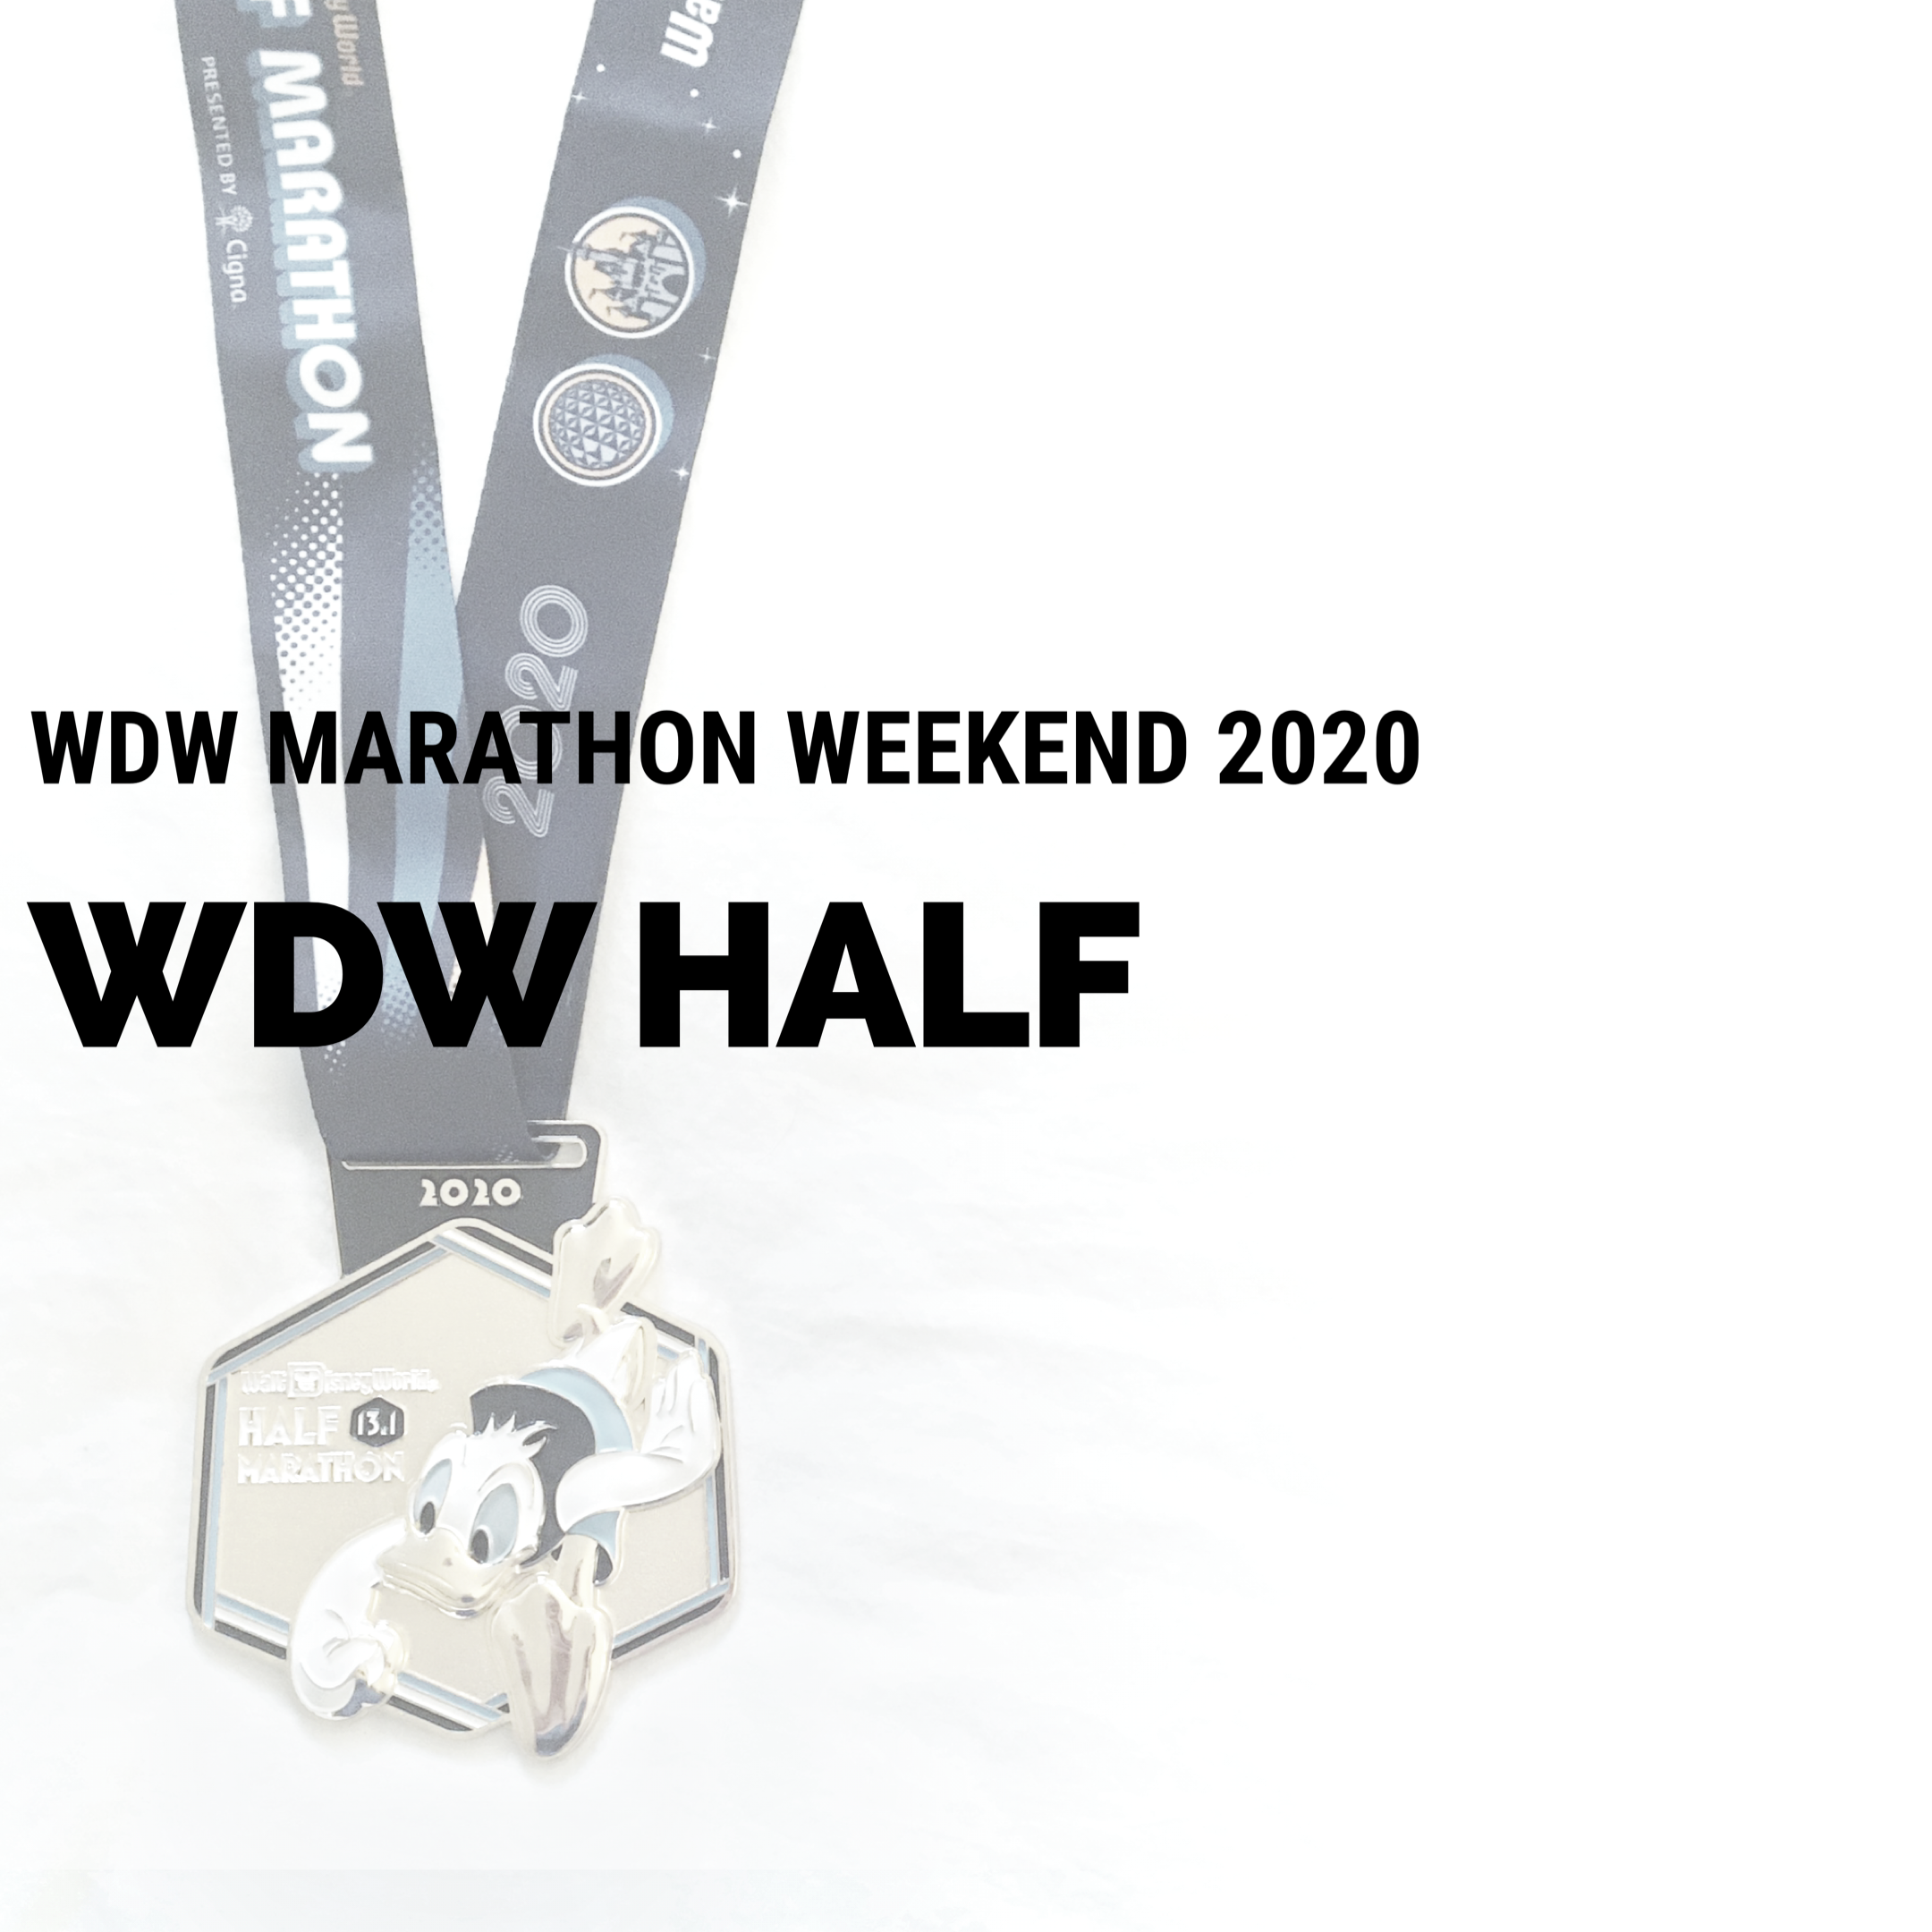 WDW Marathon Weekend 2020: WDW Half Marathon